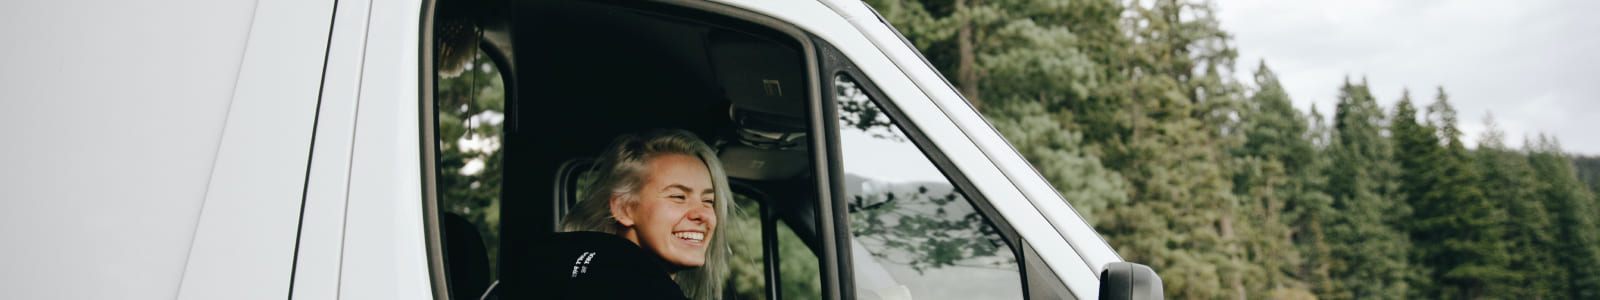 Lady smiling in van